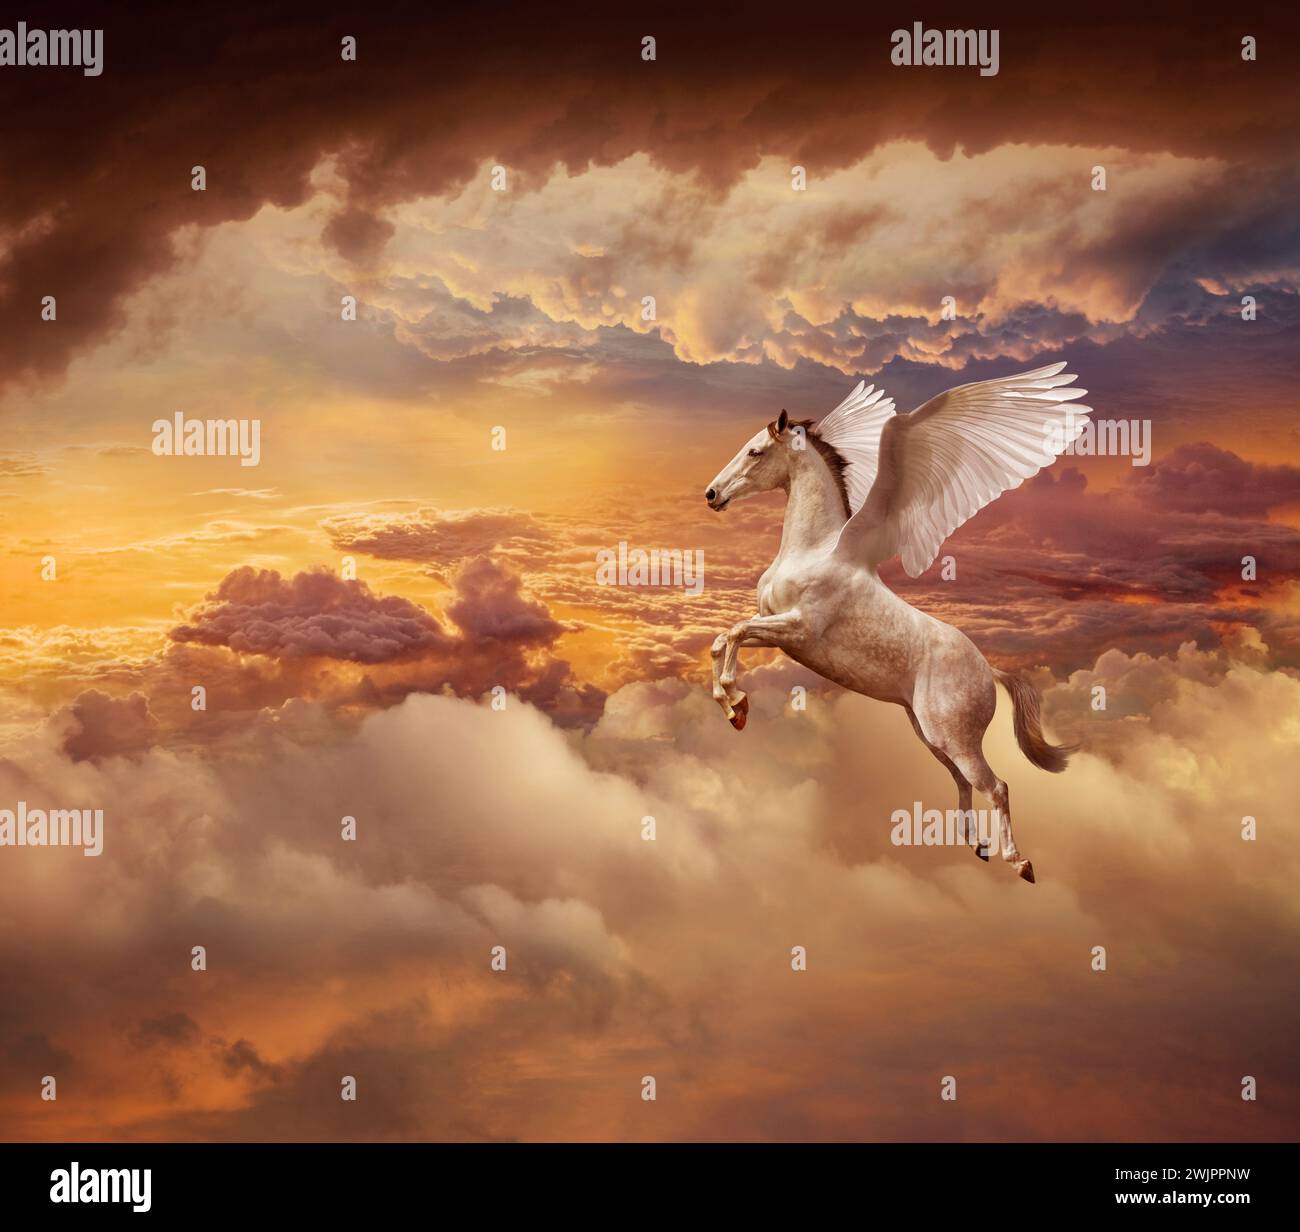 Pegasus, un cheval ailé mythologique, vole à travers un paysage de nuages de coucher de soleil dramatique dans une image d'imagination, de mythe, de possibilités et de pureté. Banque D'Images